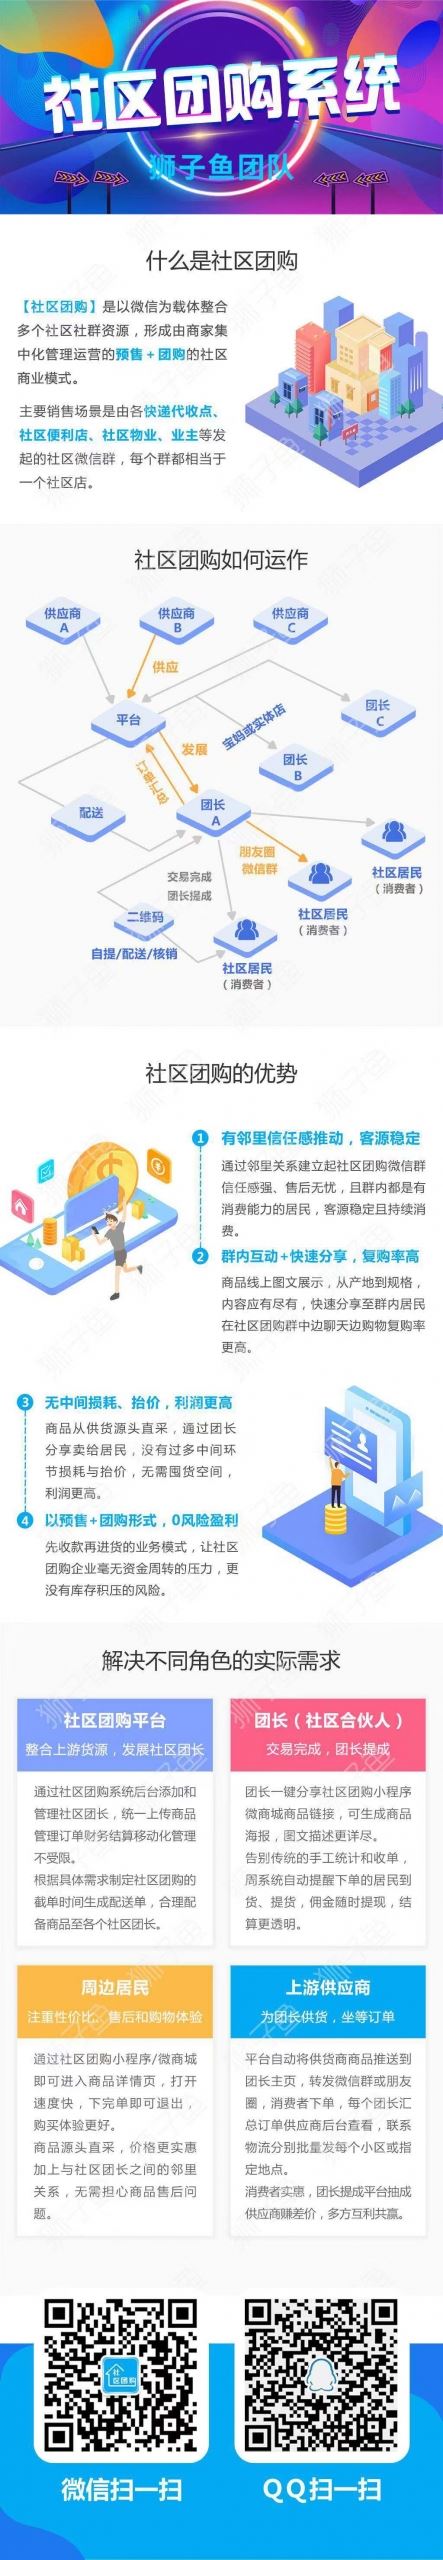 狮子鱼社区团购V12.8.2：新增供应商手机端管理等多个功能，优化商品详情海报